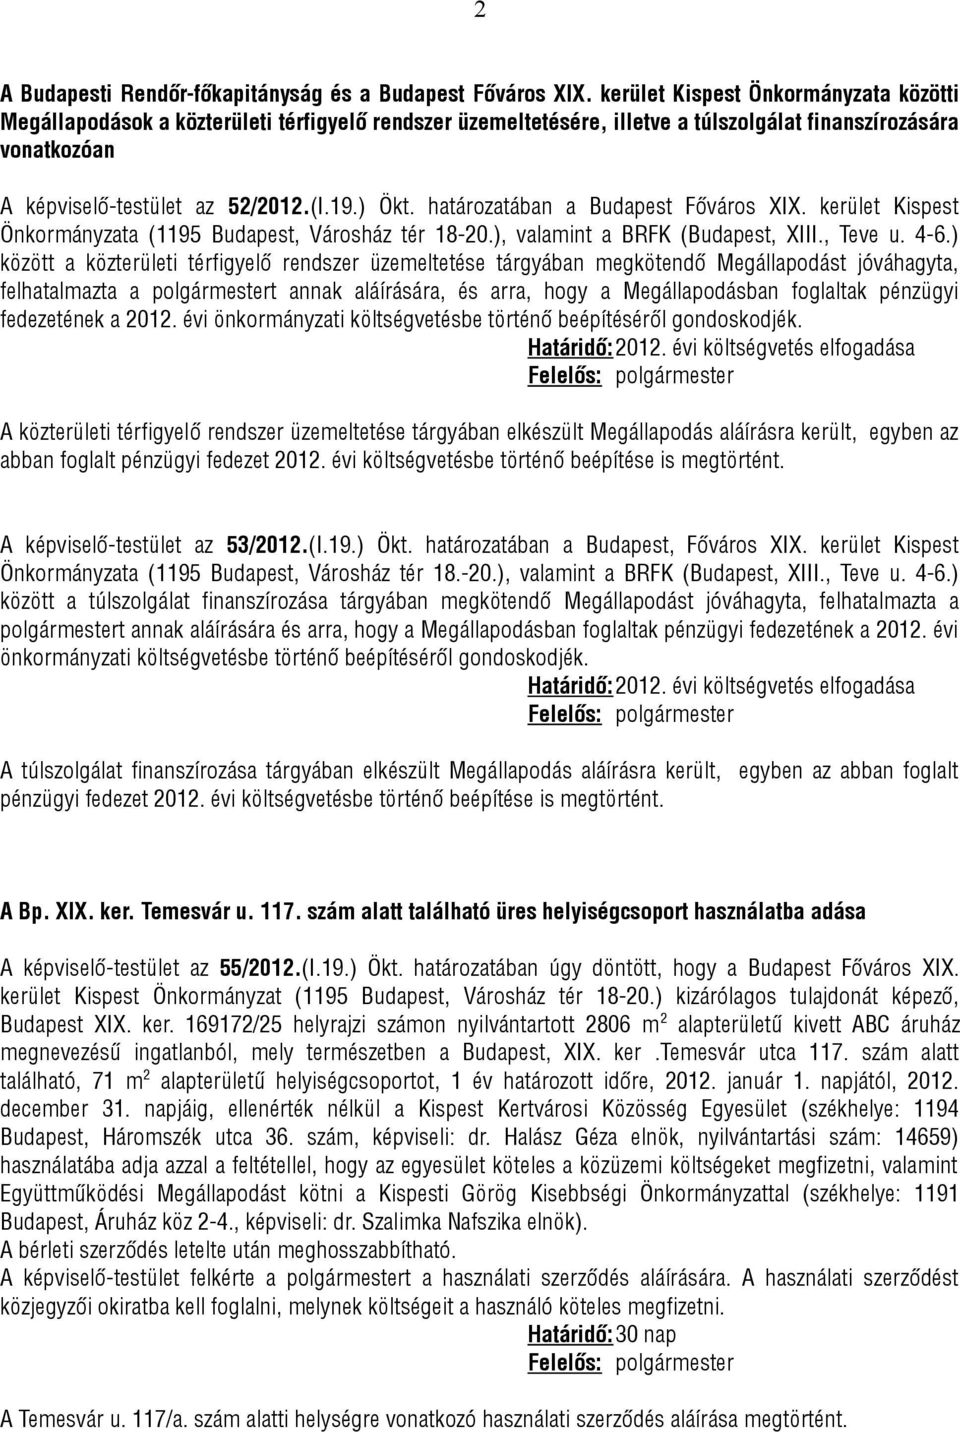 határozatában a Budapest Főváros XIX. kerület Kispest Önkormányzata (1195 Budapest, Városház tér 18-20.), valamint a BRFK (Budapest, XIII., Teve u. 4-6.